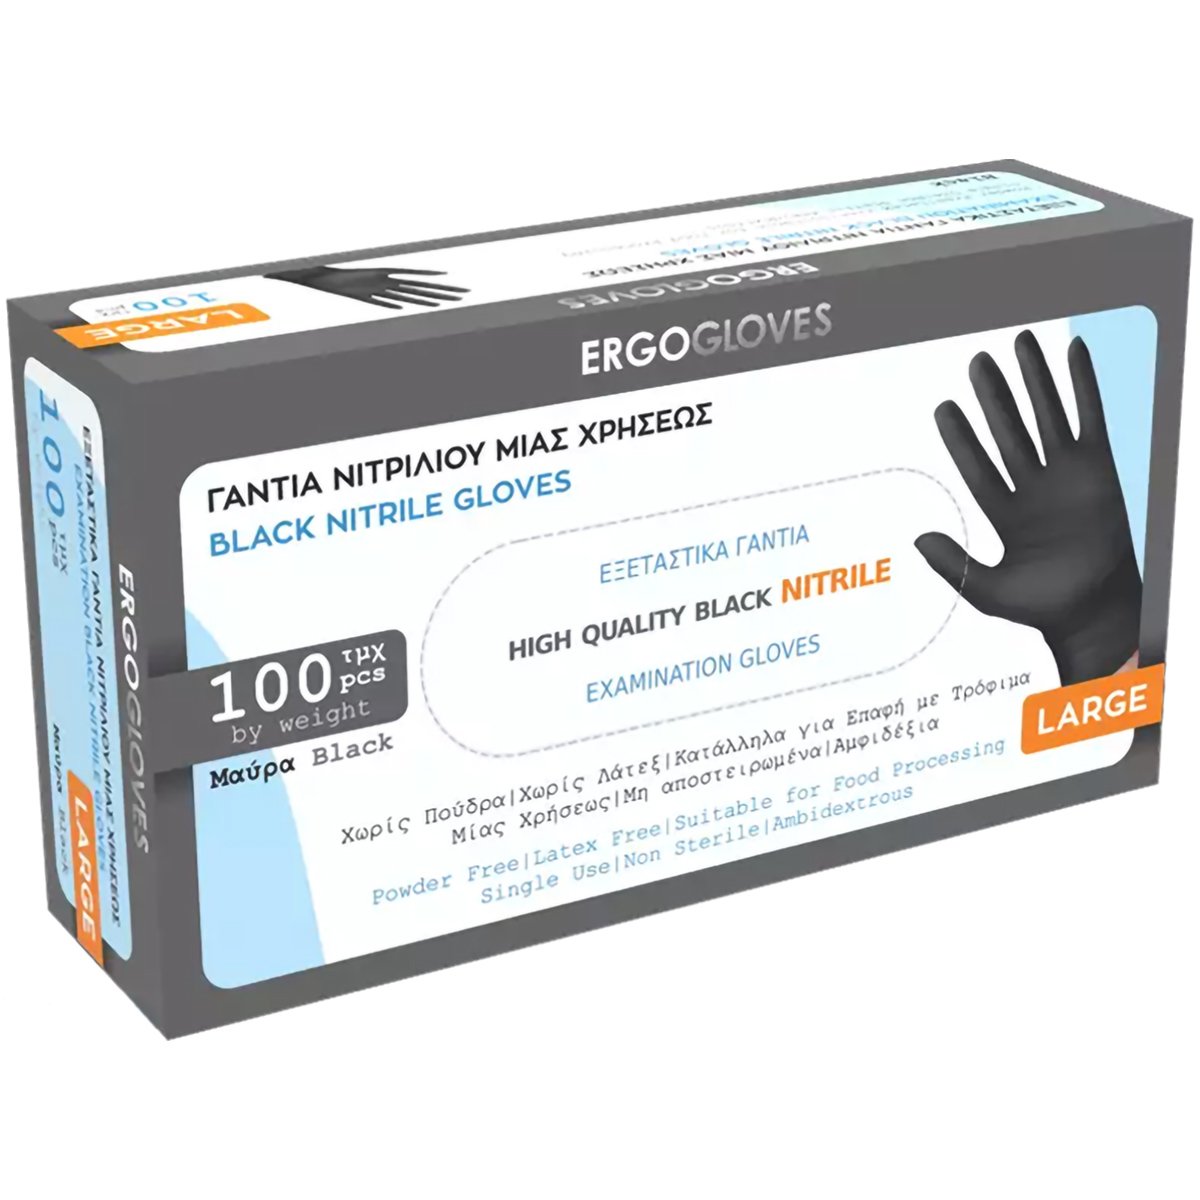 Bulk Ergogloves Black Nitrile Gloves Μαύρα Γάντια Νιτριλίου Μιας Χρήσης 100 Τεμάχια - Large